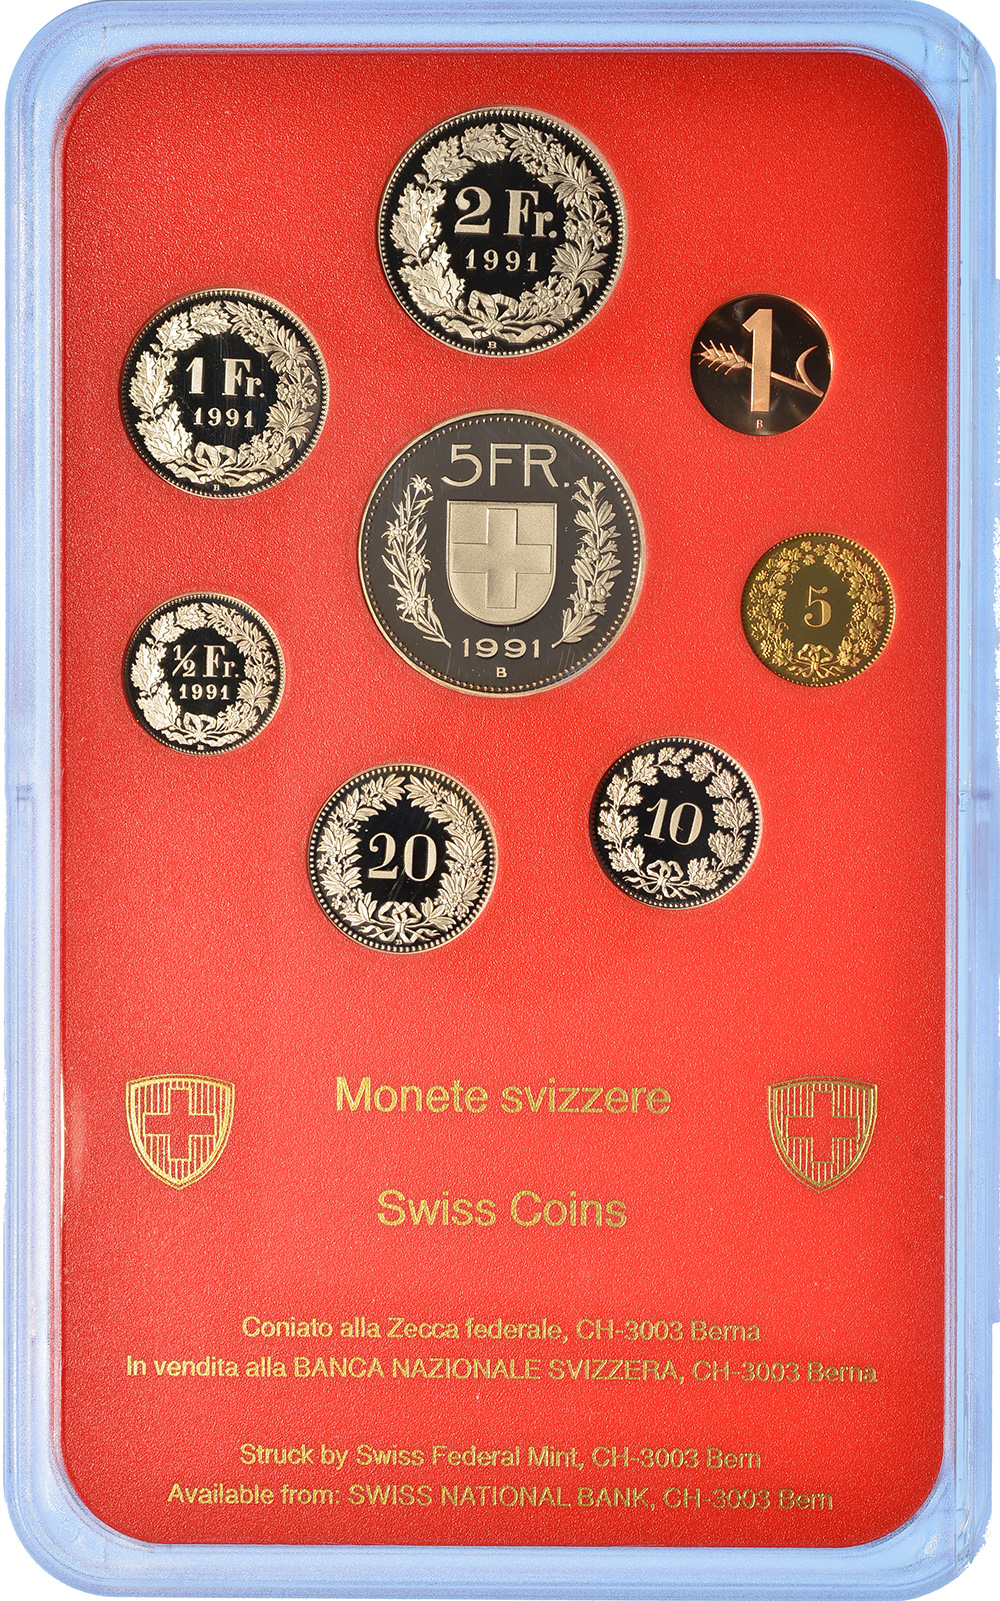 Münzensatz, 1991, Polierte Platte, Kupfer/Nickel